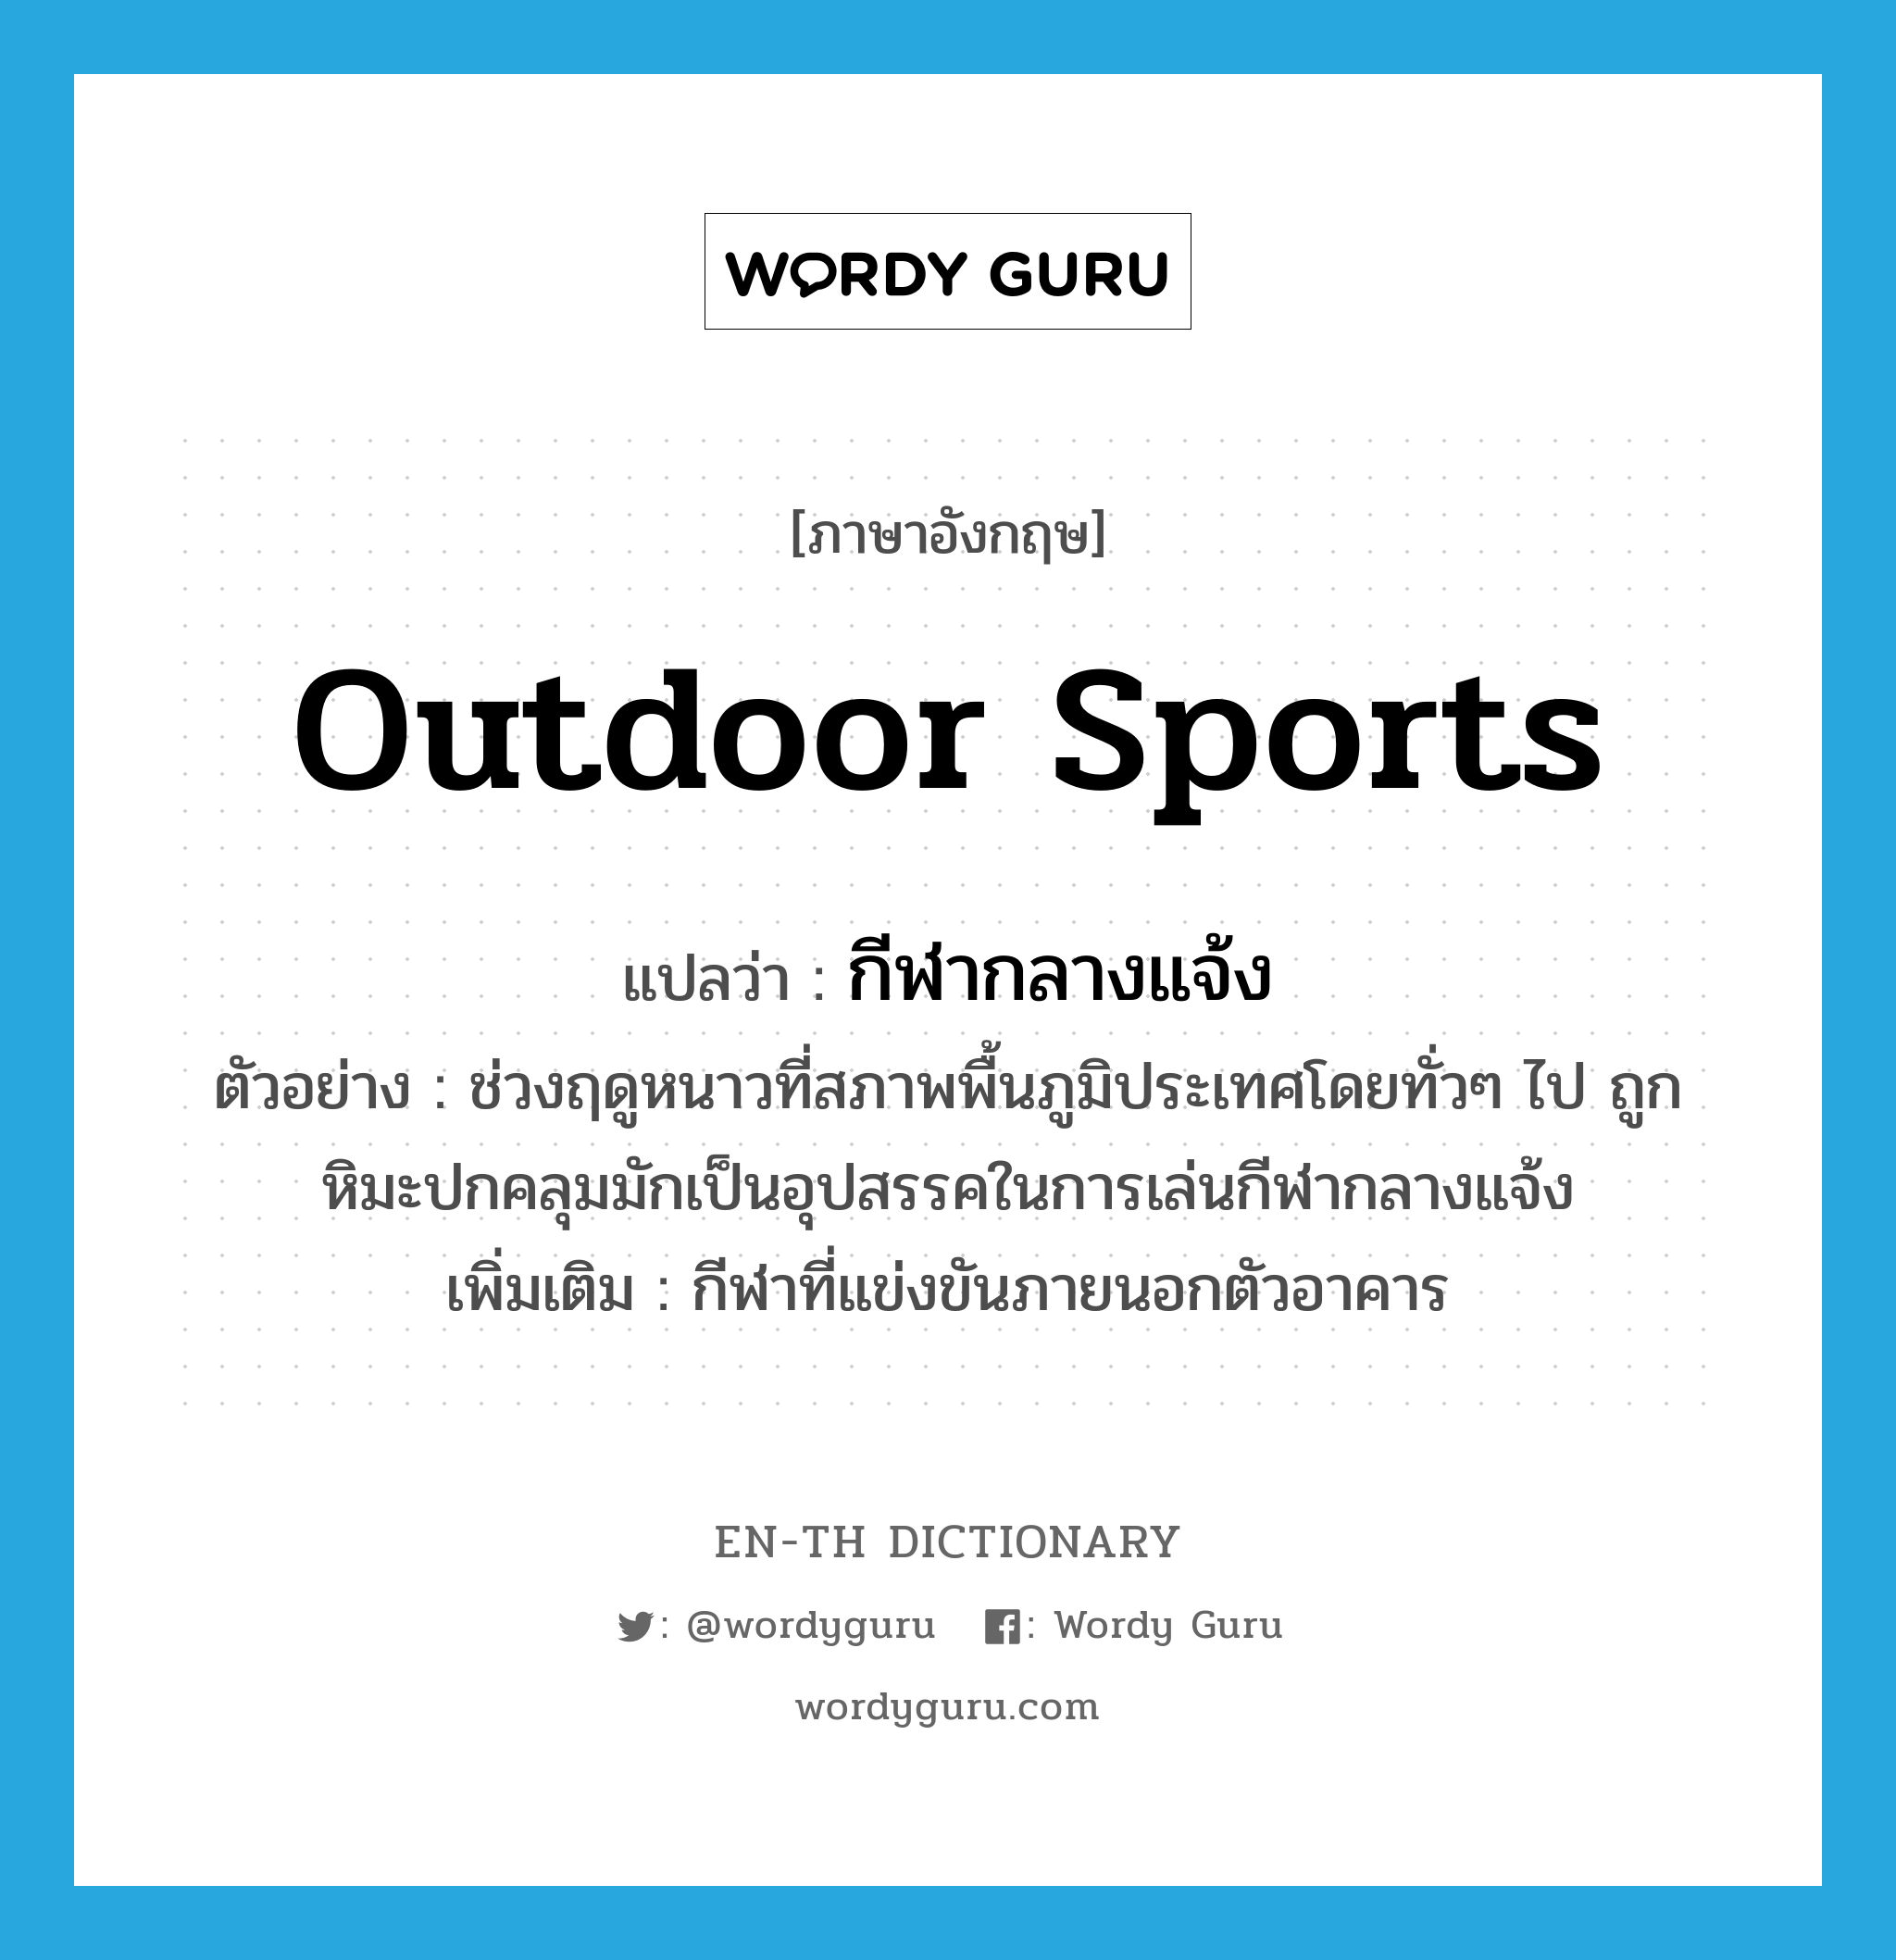 outdoor sports แปลว่า?, คำศัพท์ภาษาอังกฤษ outdoor sports แปลว่า กีฬากลางแจ้ง ประเภท N ตัวอย่าง ช่วงฤดูหนาวที่สภาพพื้นภูมิประเทศโดยทั่วๆ ไป ถูกหิมะปกคลุมมักเป็นอุปสรรคในการเล่นกีฬากลางแจ้ง เพิ่มเติม กีฬาที่แข่งขันภายนอกตัวอาคาร หมวด N